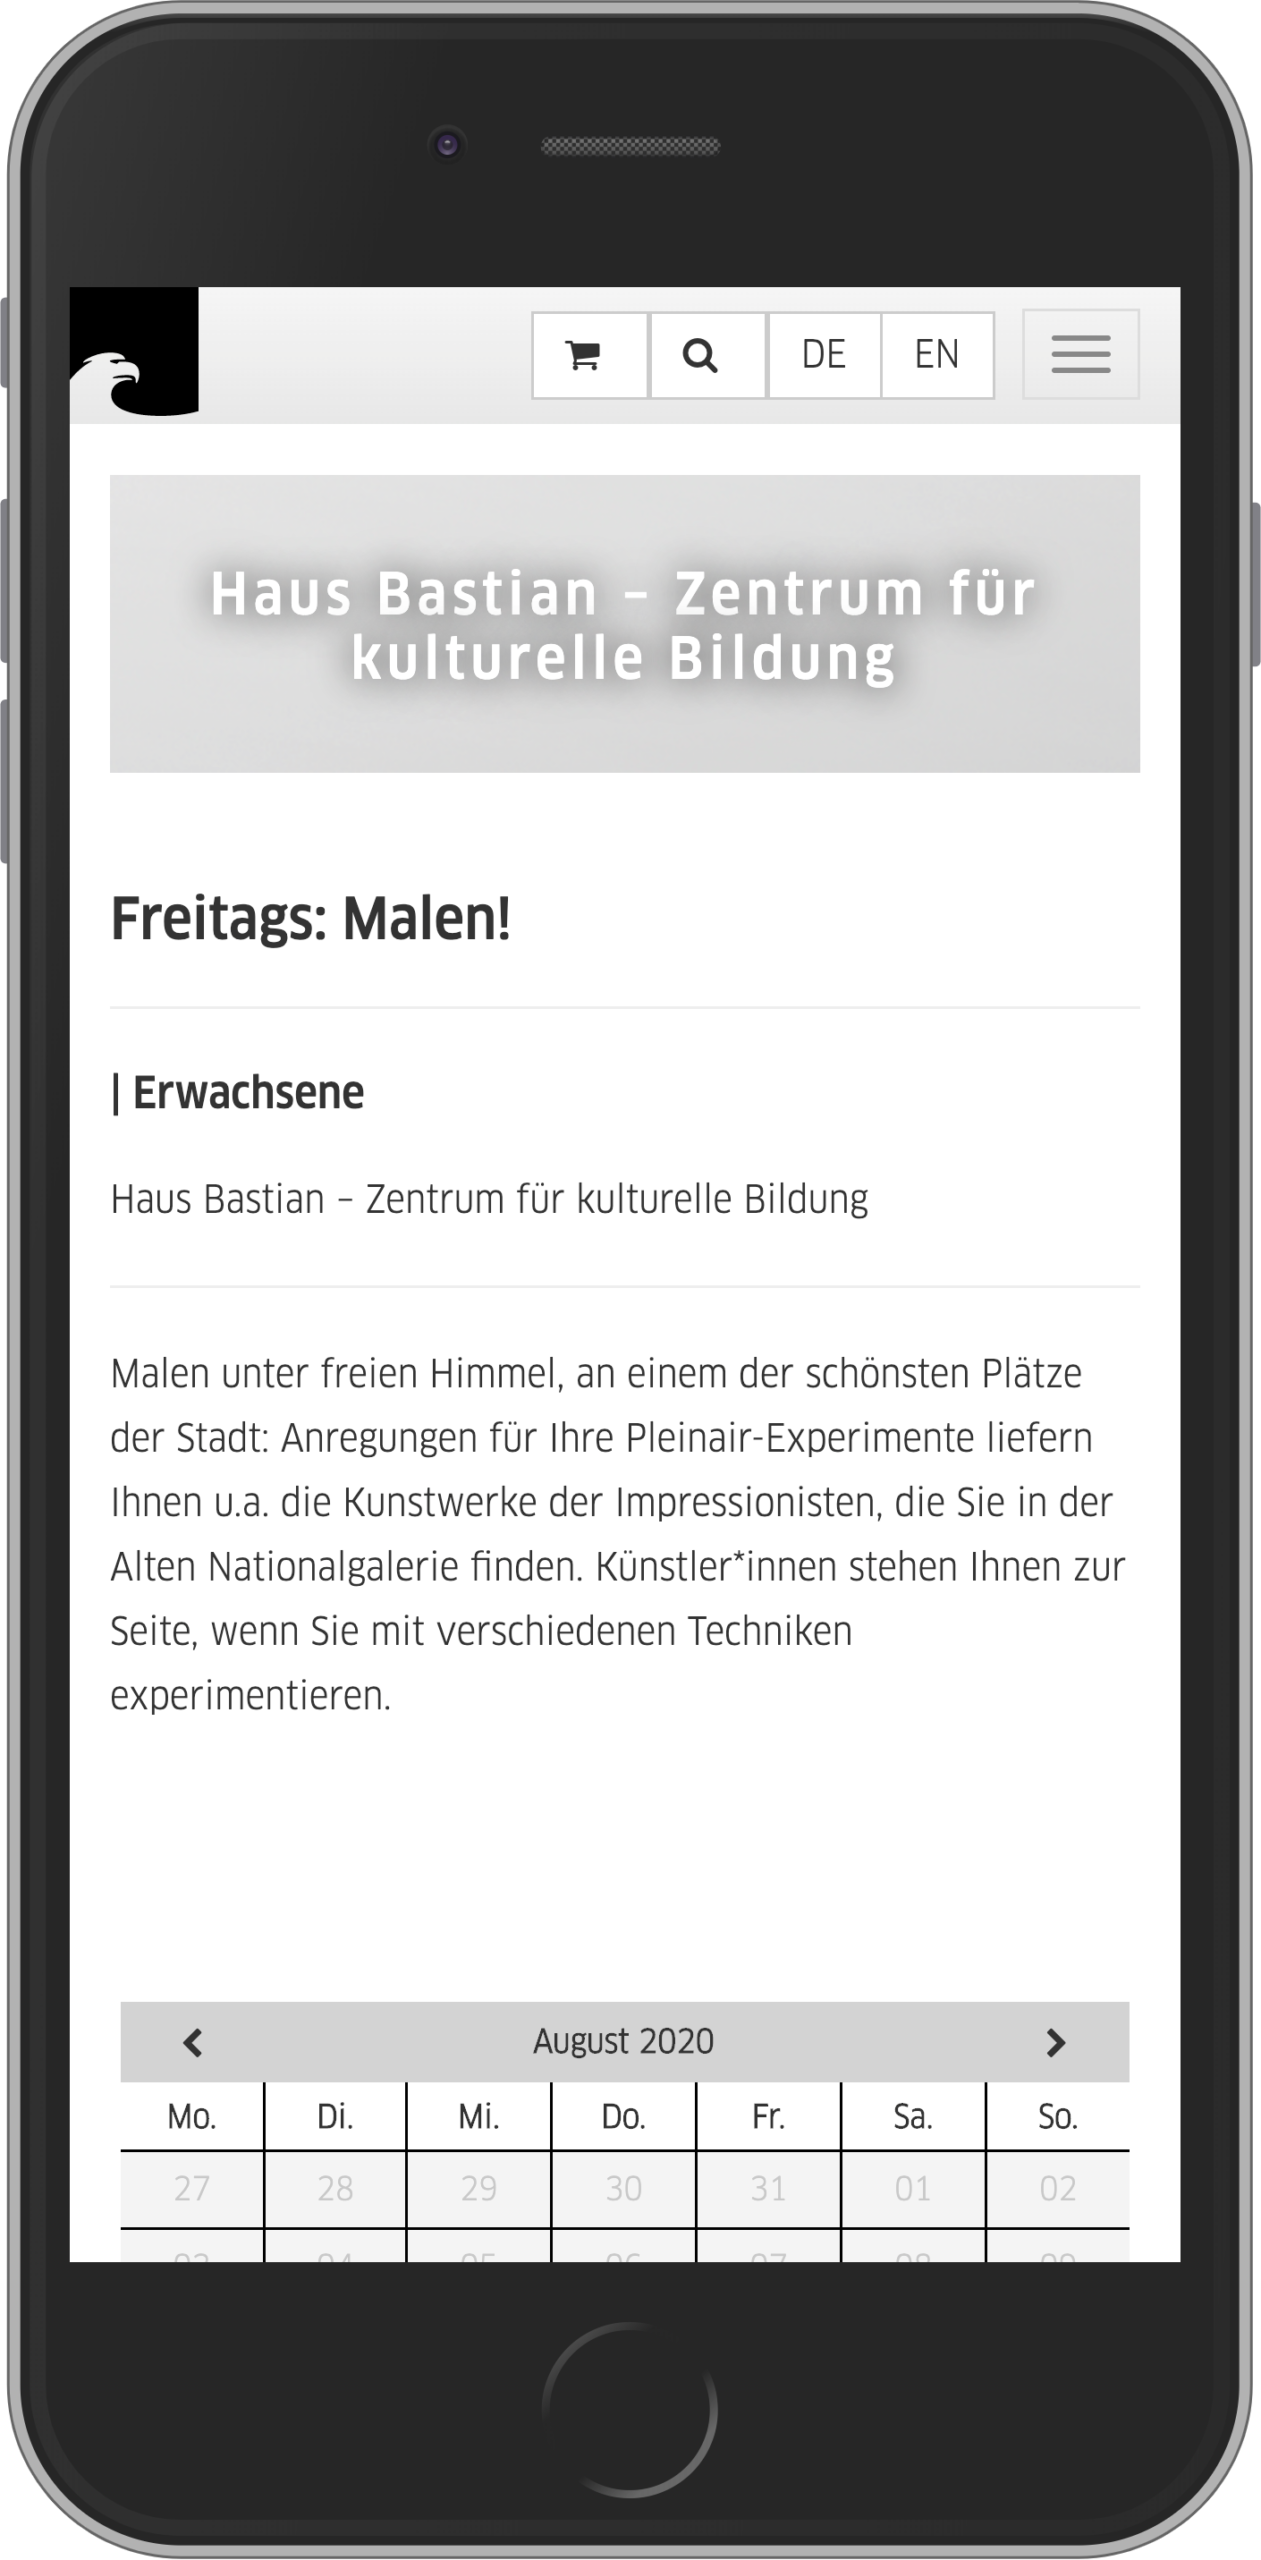 Mobile Ansicht der Detailansicht einer Veranstaltung im Kaufprozesses für Veranstaltungen im Online-Shop der Staatlichen Museen zu Berlin